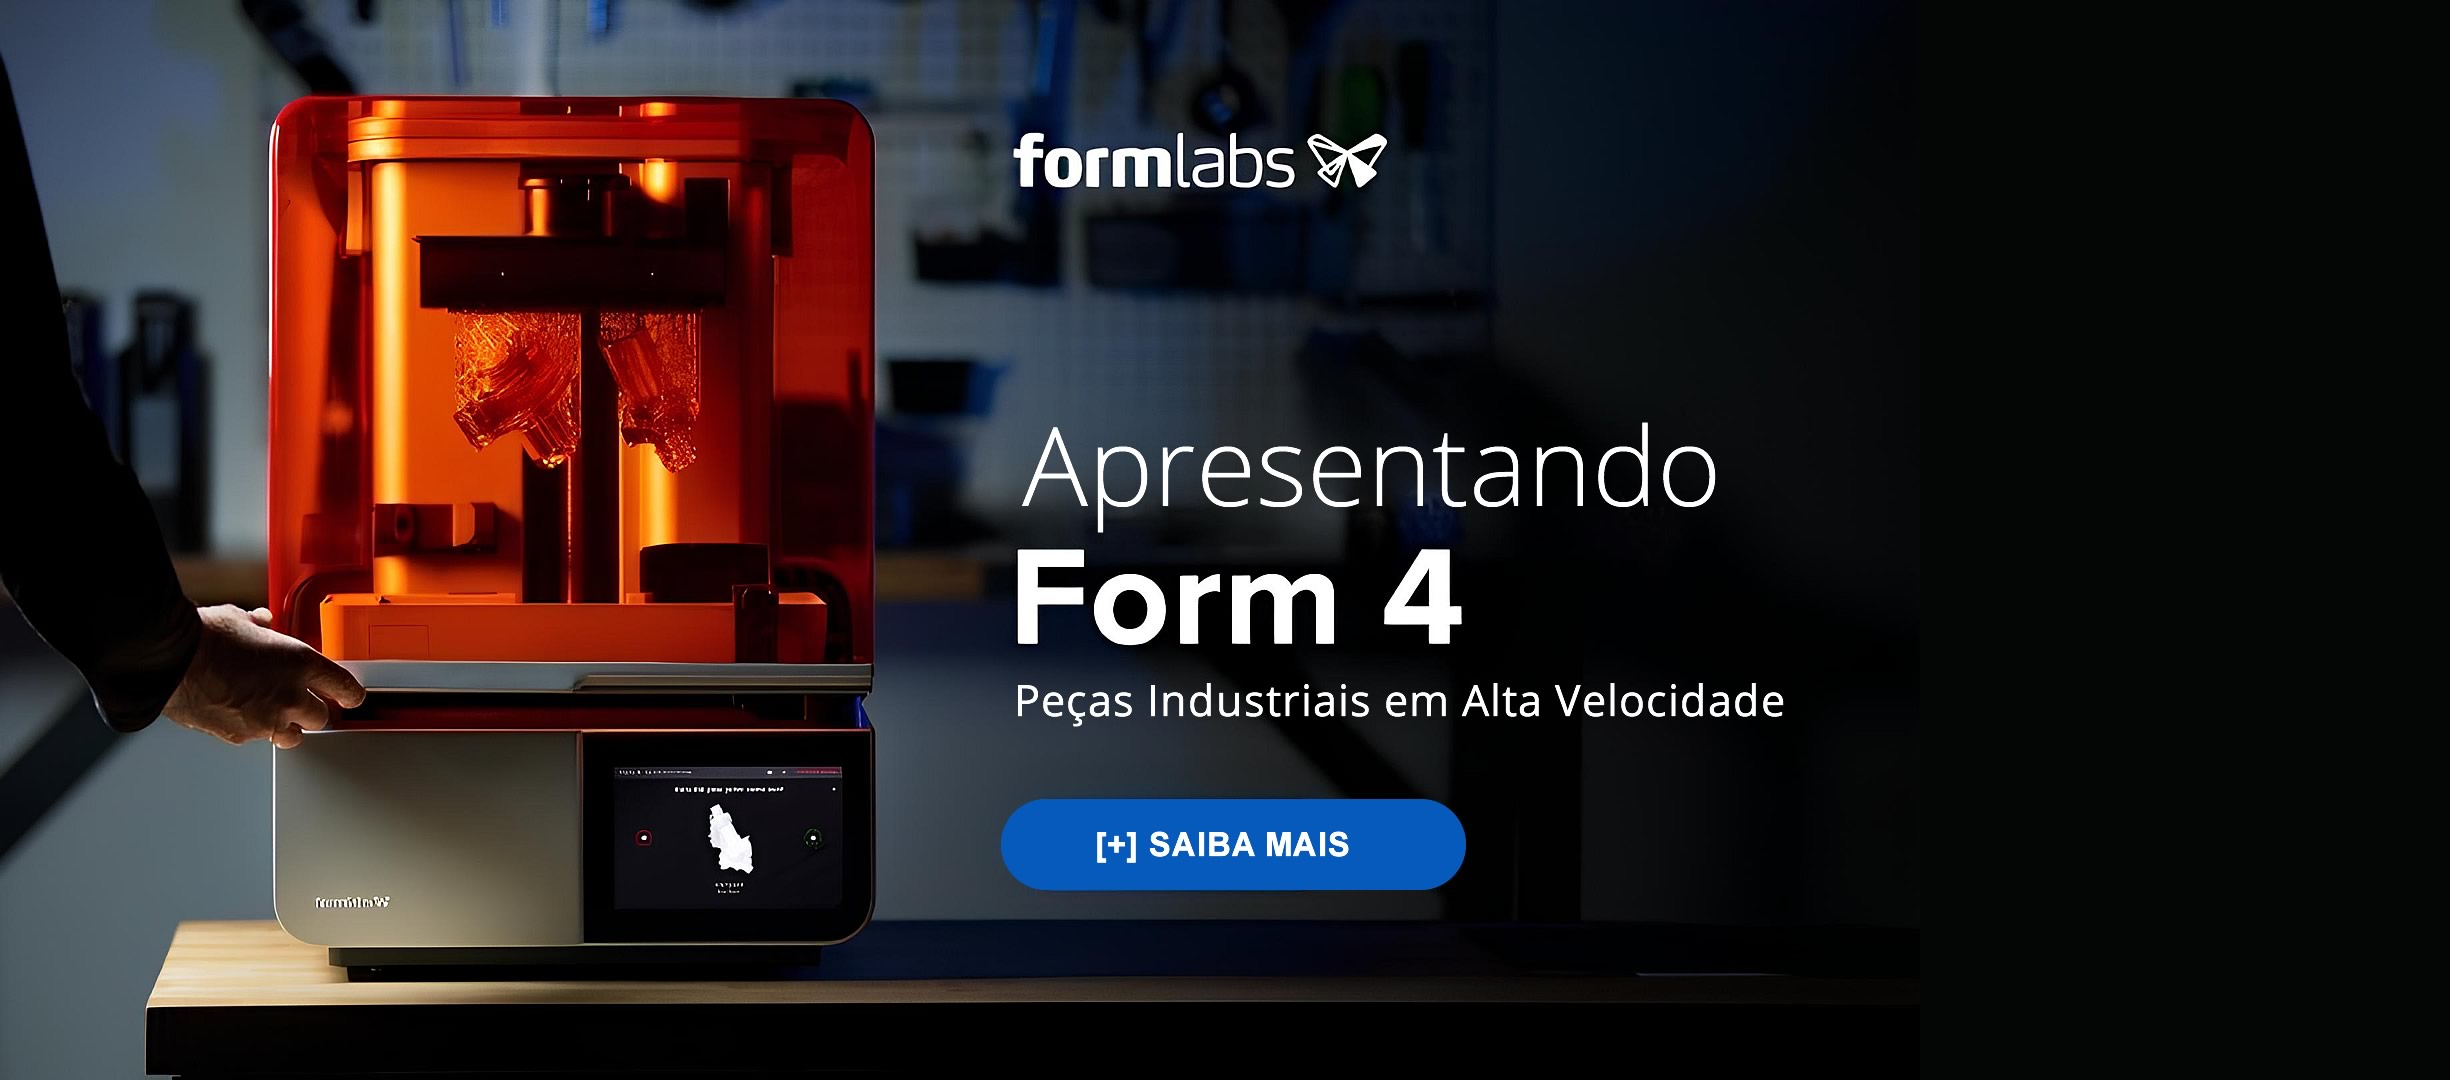 Form 4 - Formlabs